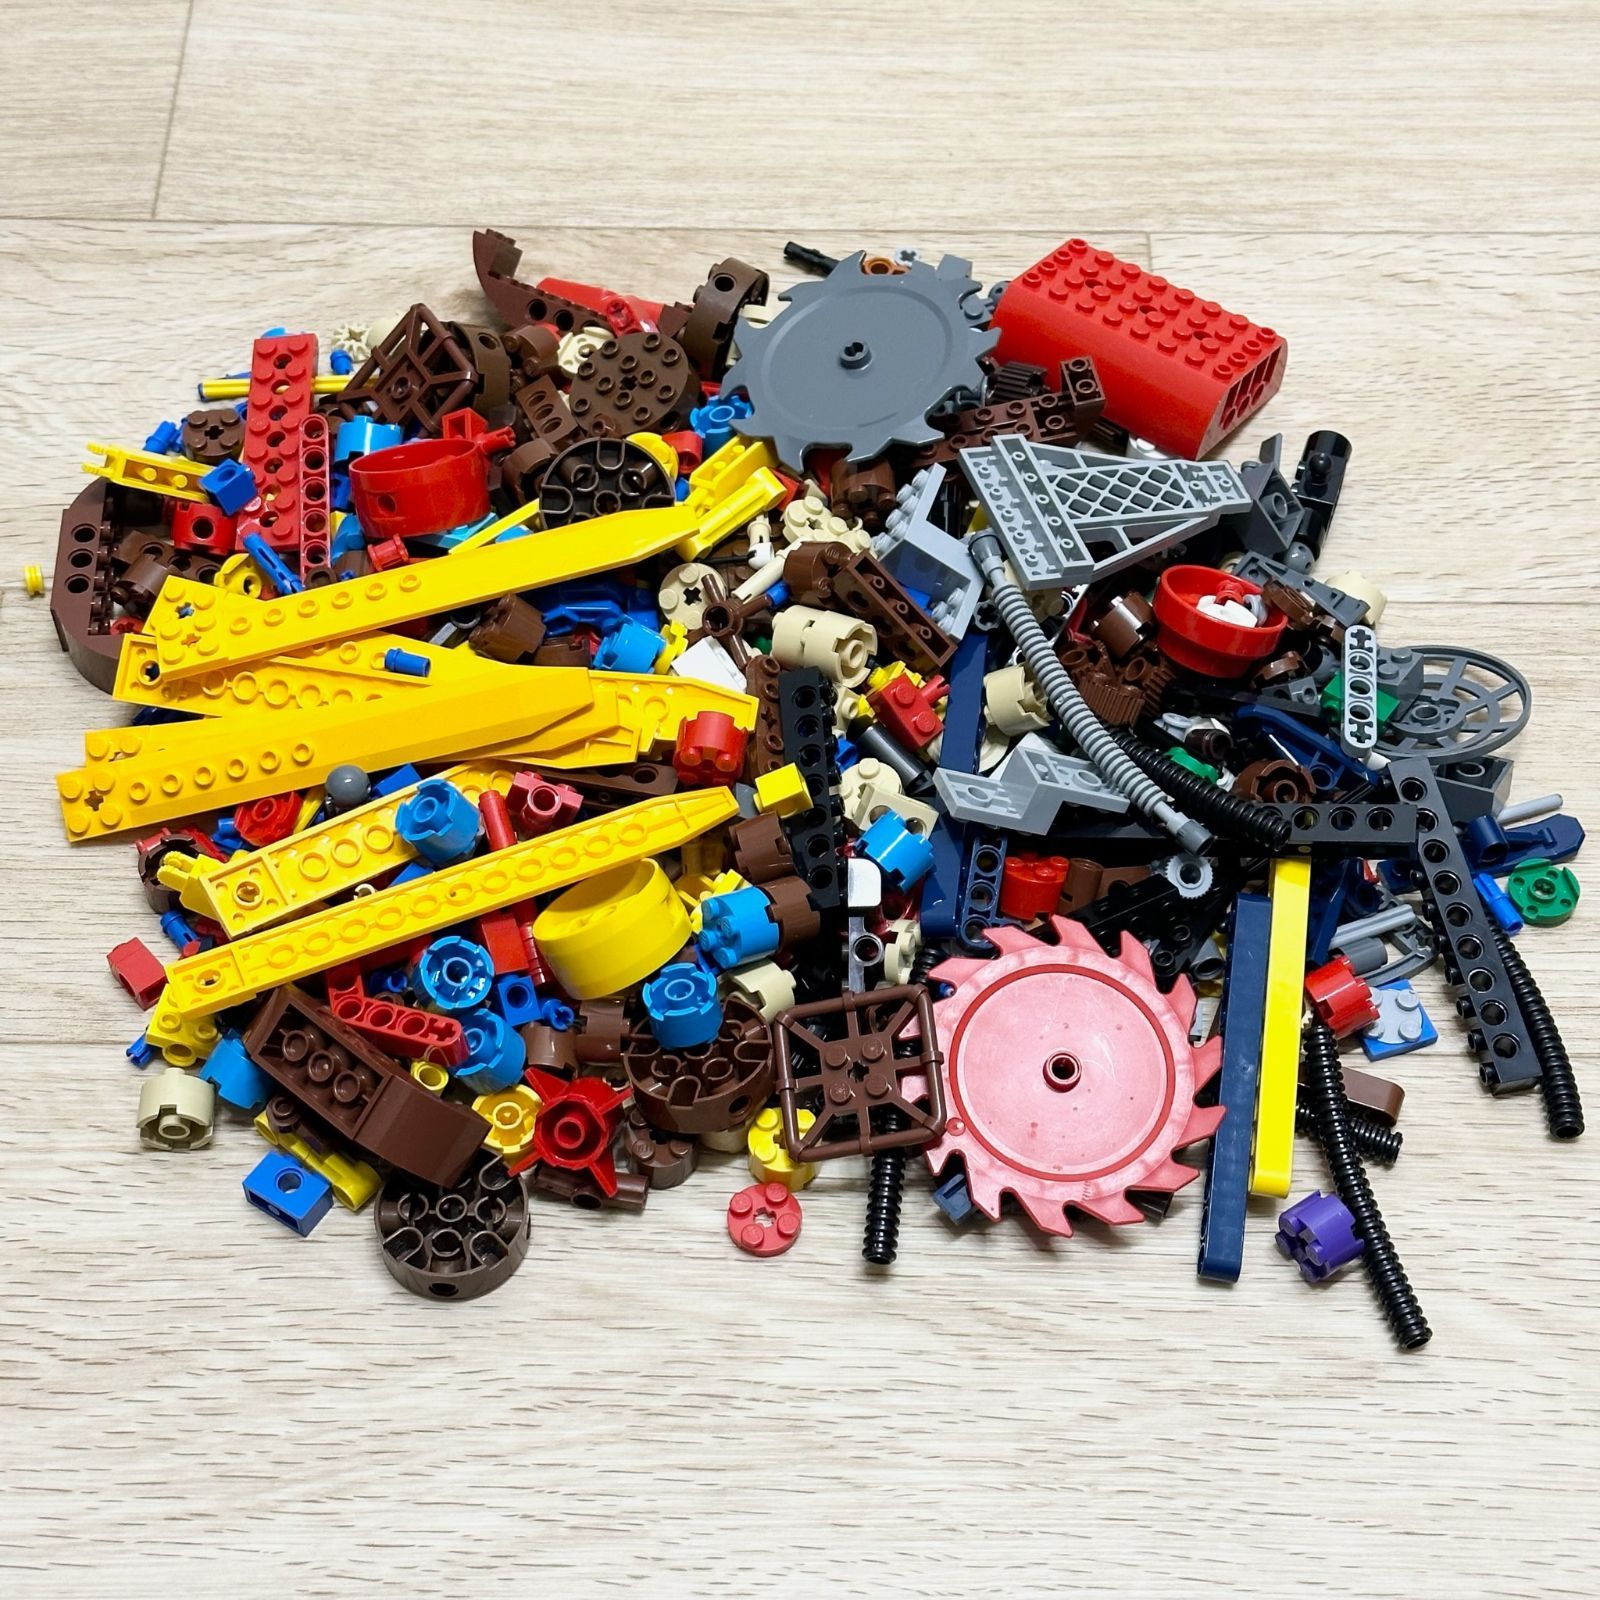 LEGO レゴ テクニック系 中古 パーツ ホース 丸ノコブレード ピン 軸